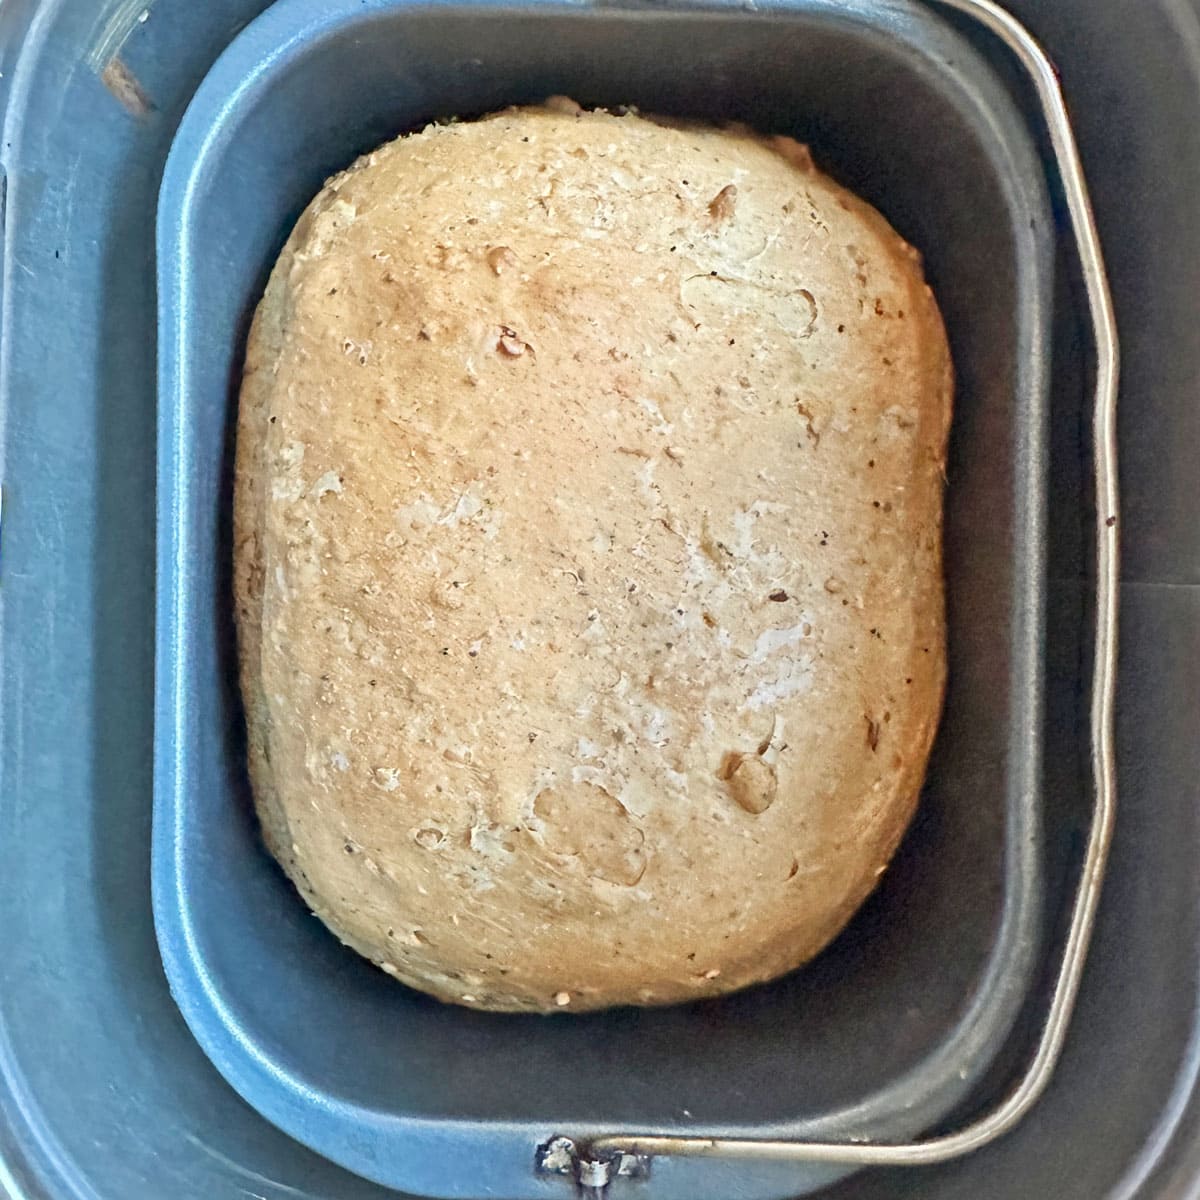 Daves Killer bread loaf in bread pan.